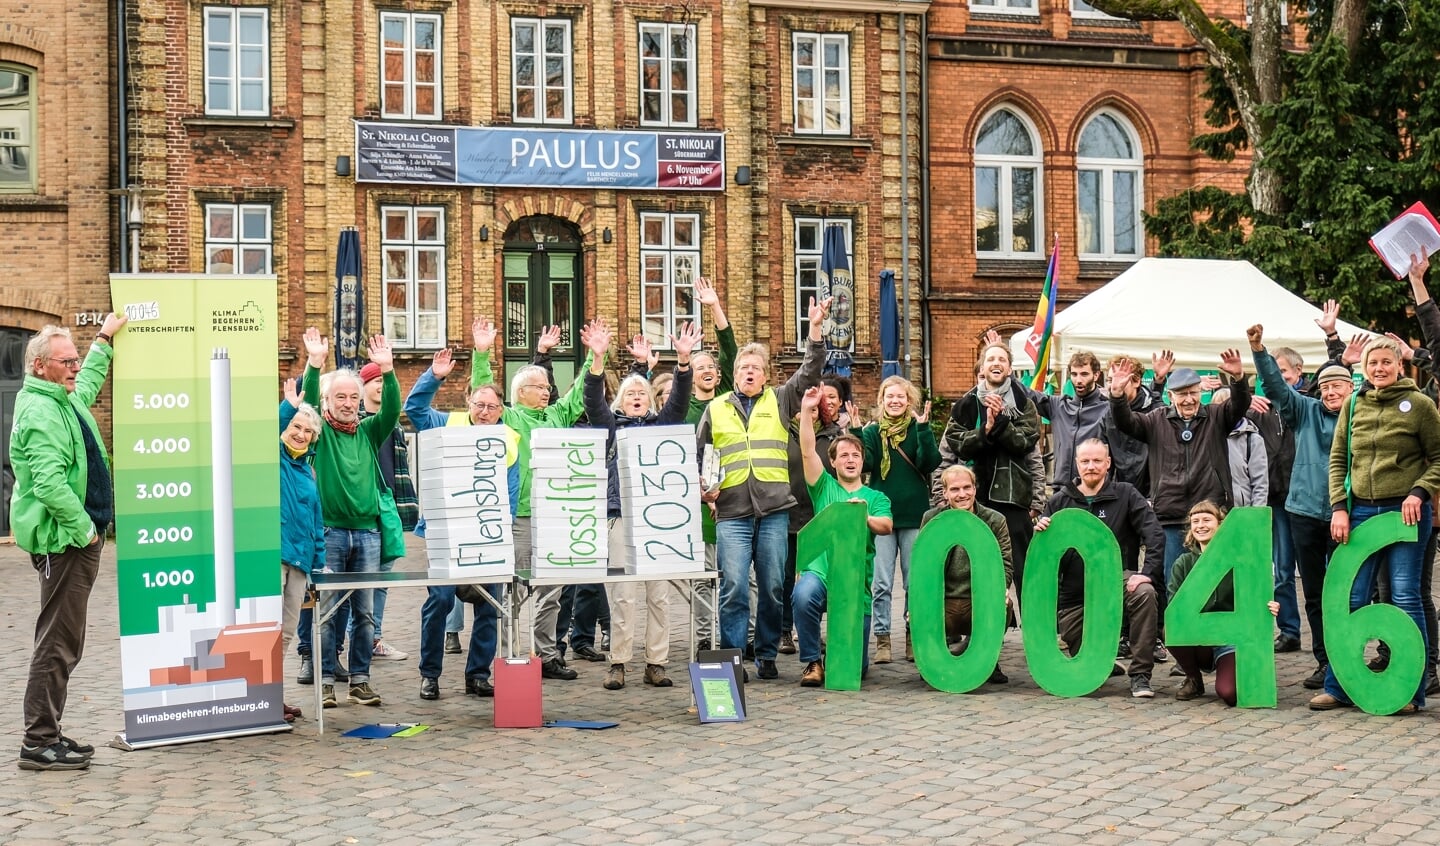 Das Flensburger Klimabegehren präsentierte am Donnerstag auf dem Südermarkt das Ergebnis seiner Unterschriftensammlung und wird nach eigenen Angaben von 10.046 Bürgern unterstützt. Foto: